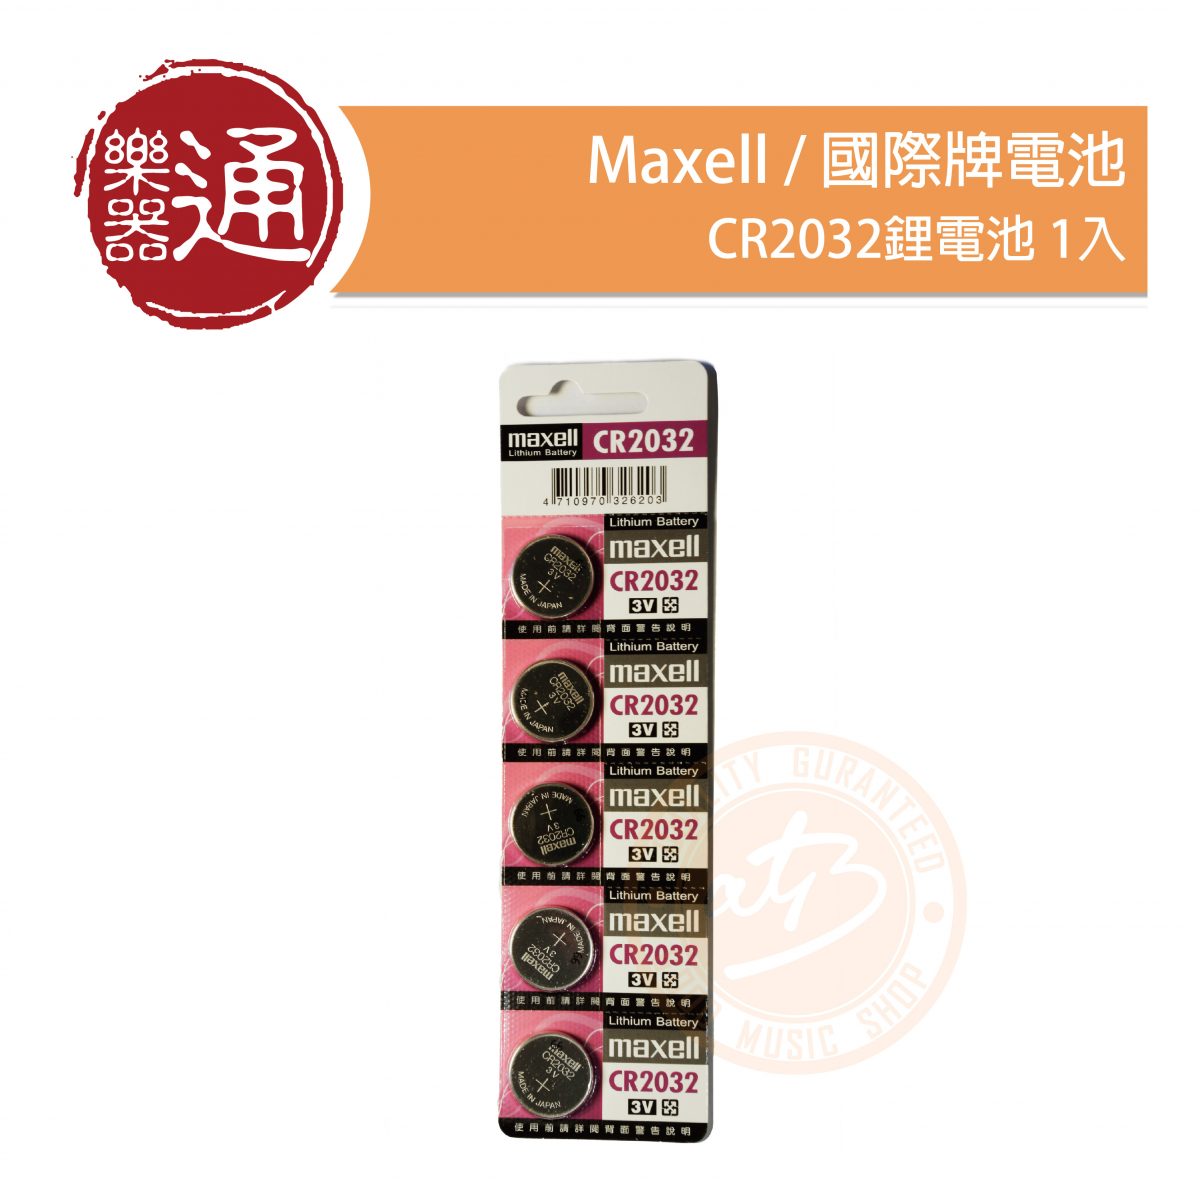 200604-國際牌電池CR2032_大頭貼